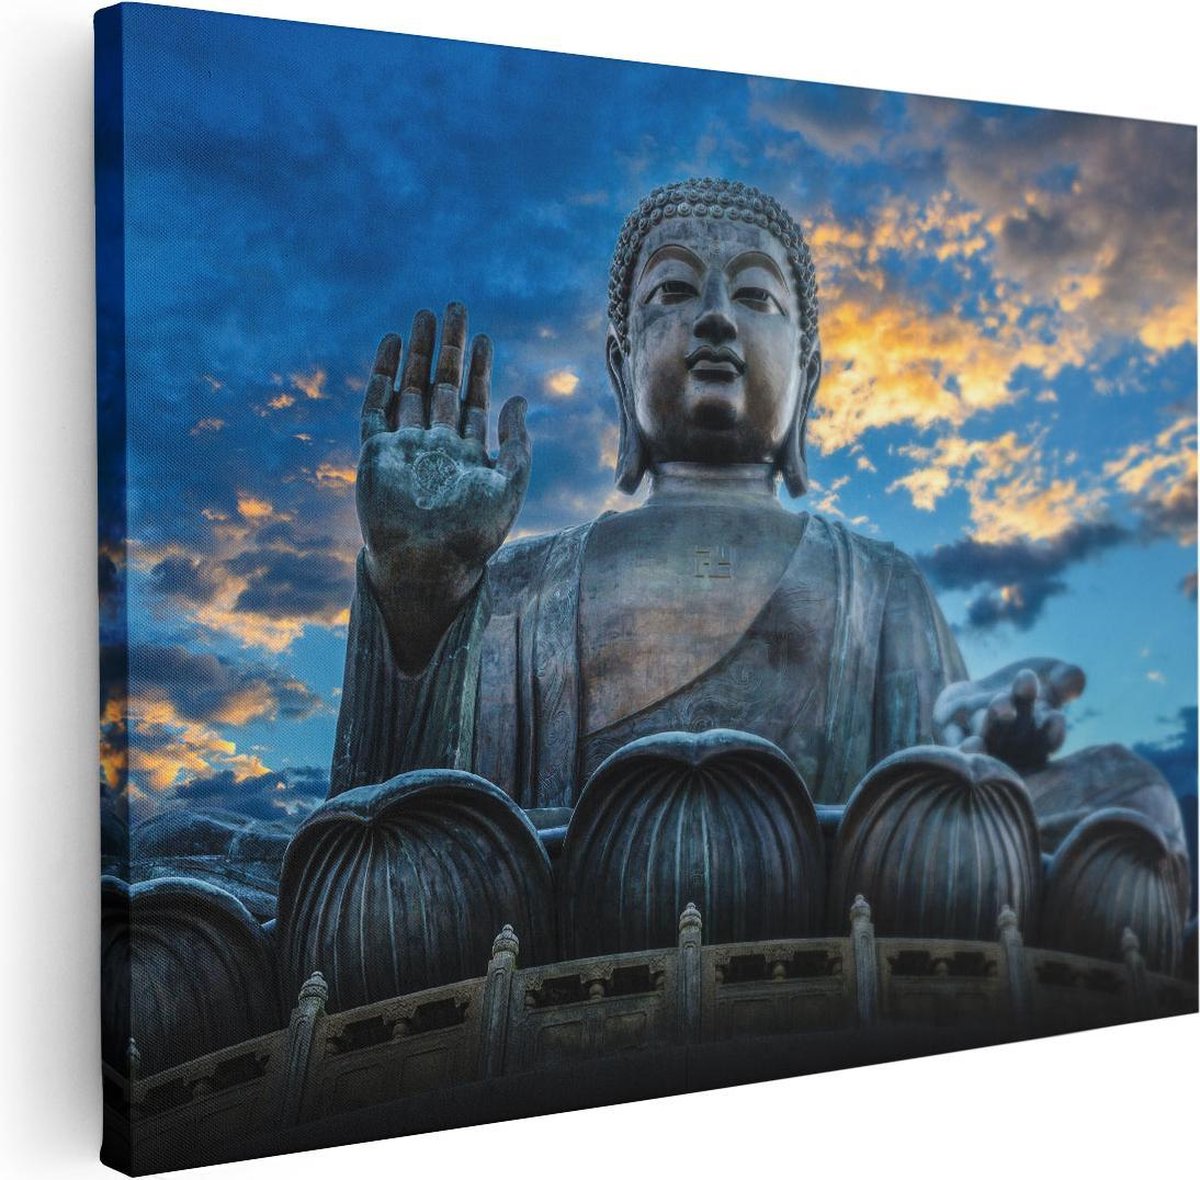 Statue Bouddha une main levée 30cm